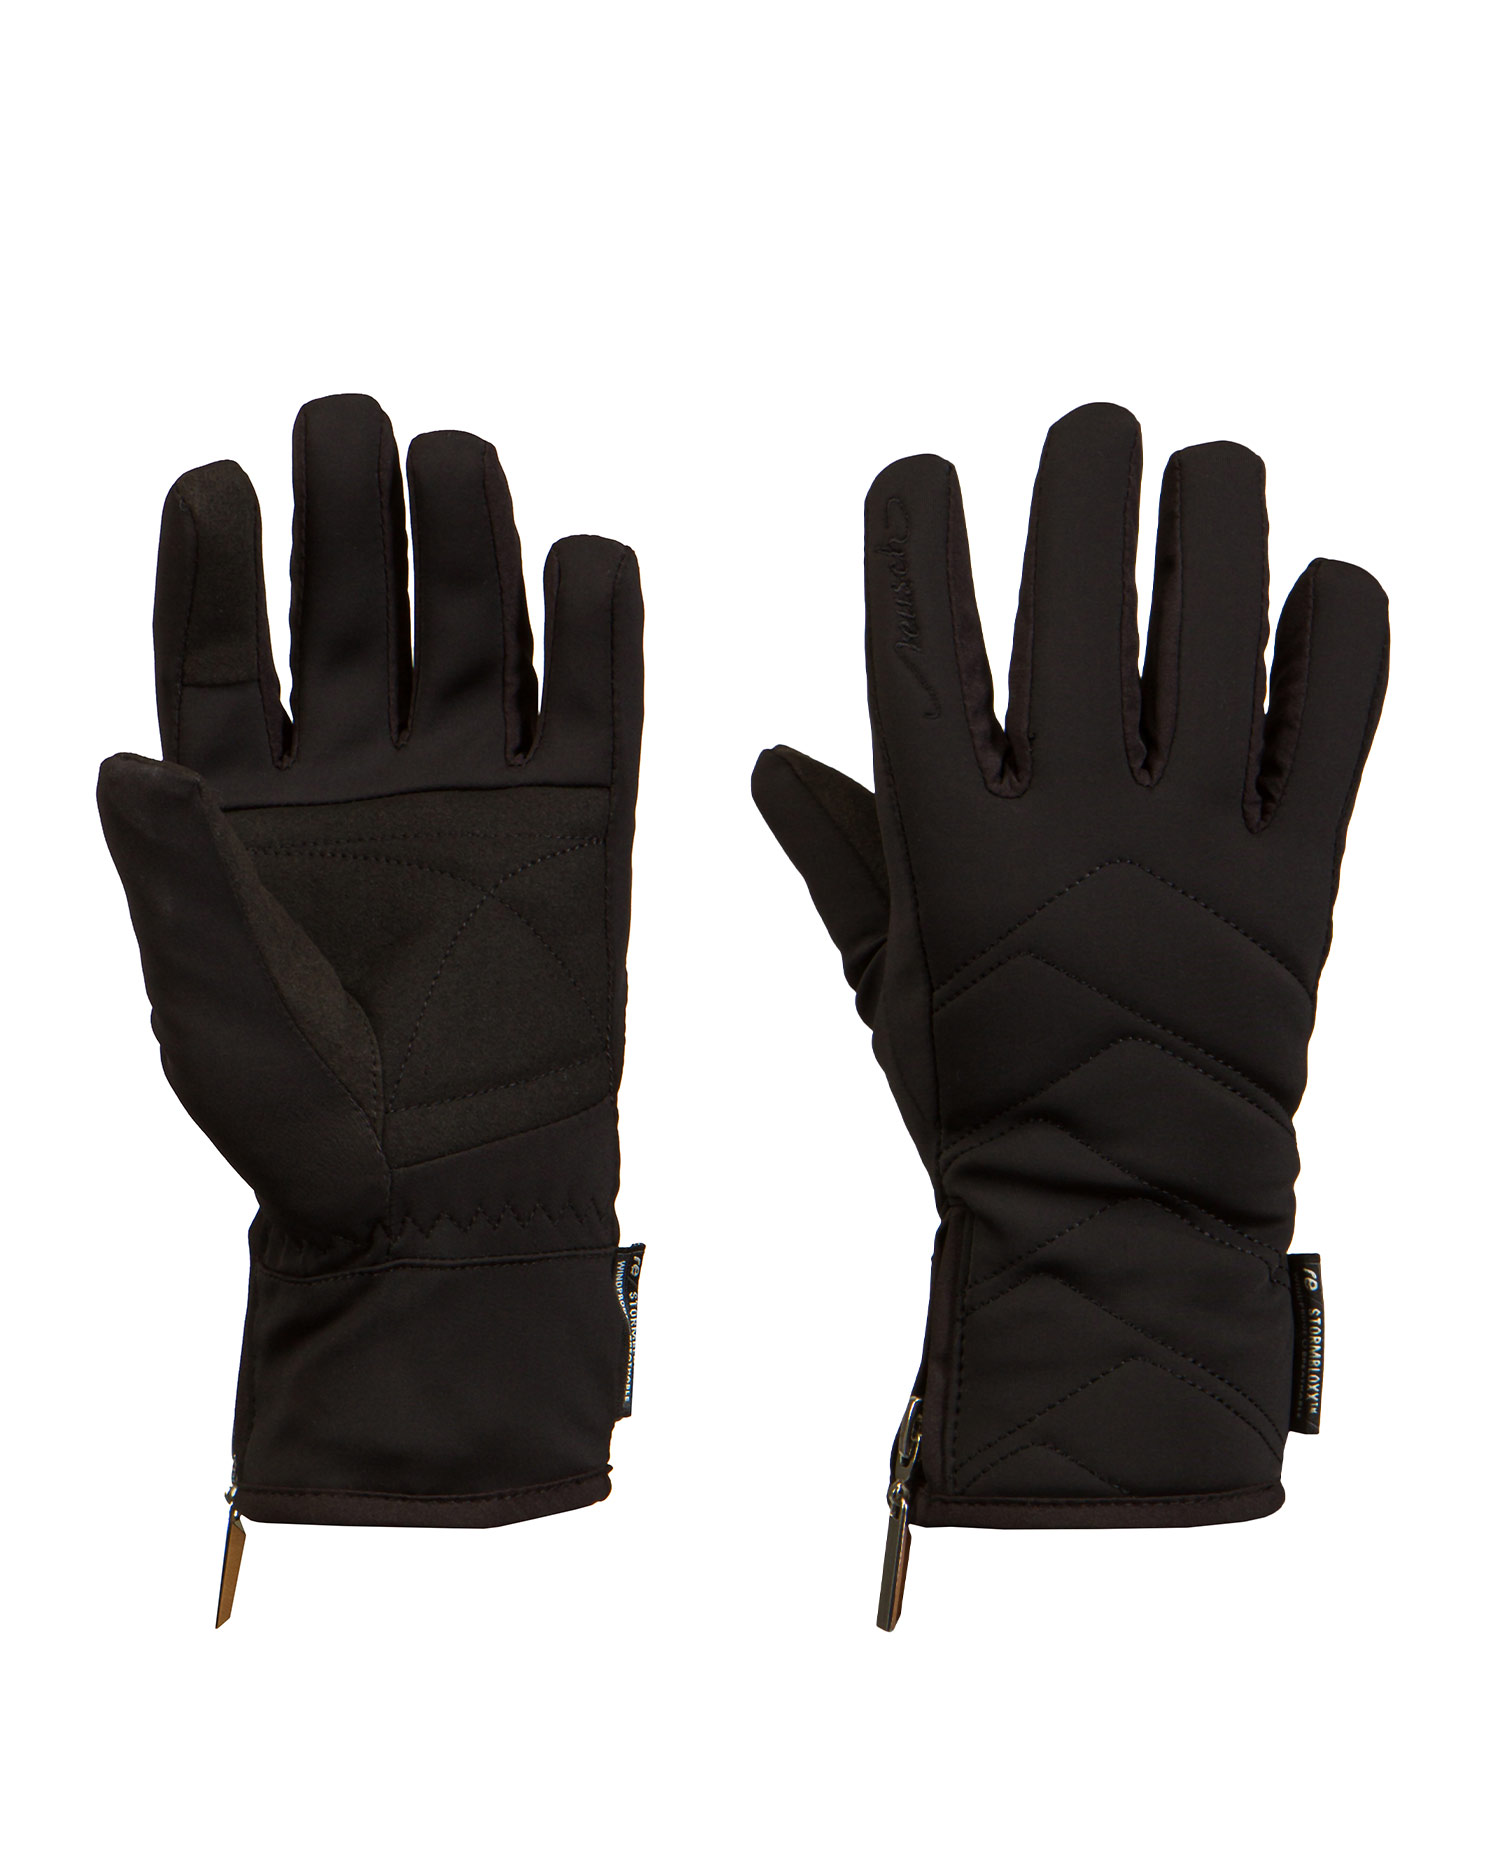 REUSCH Loredana Touch-Tec™ gloves 4935198-7700black | S\'portofino